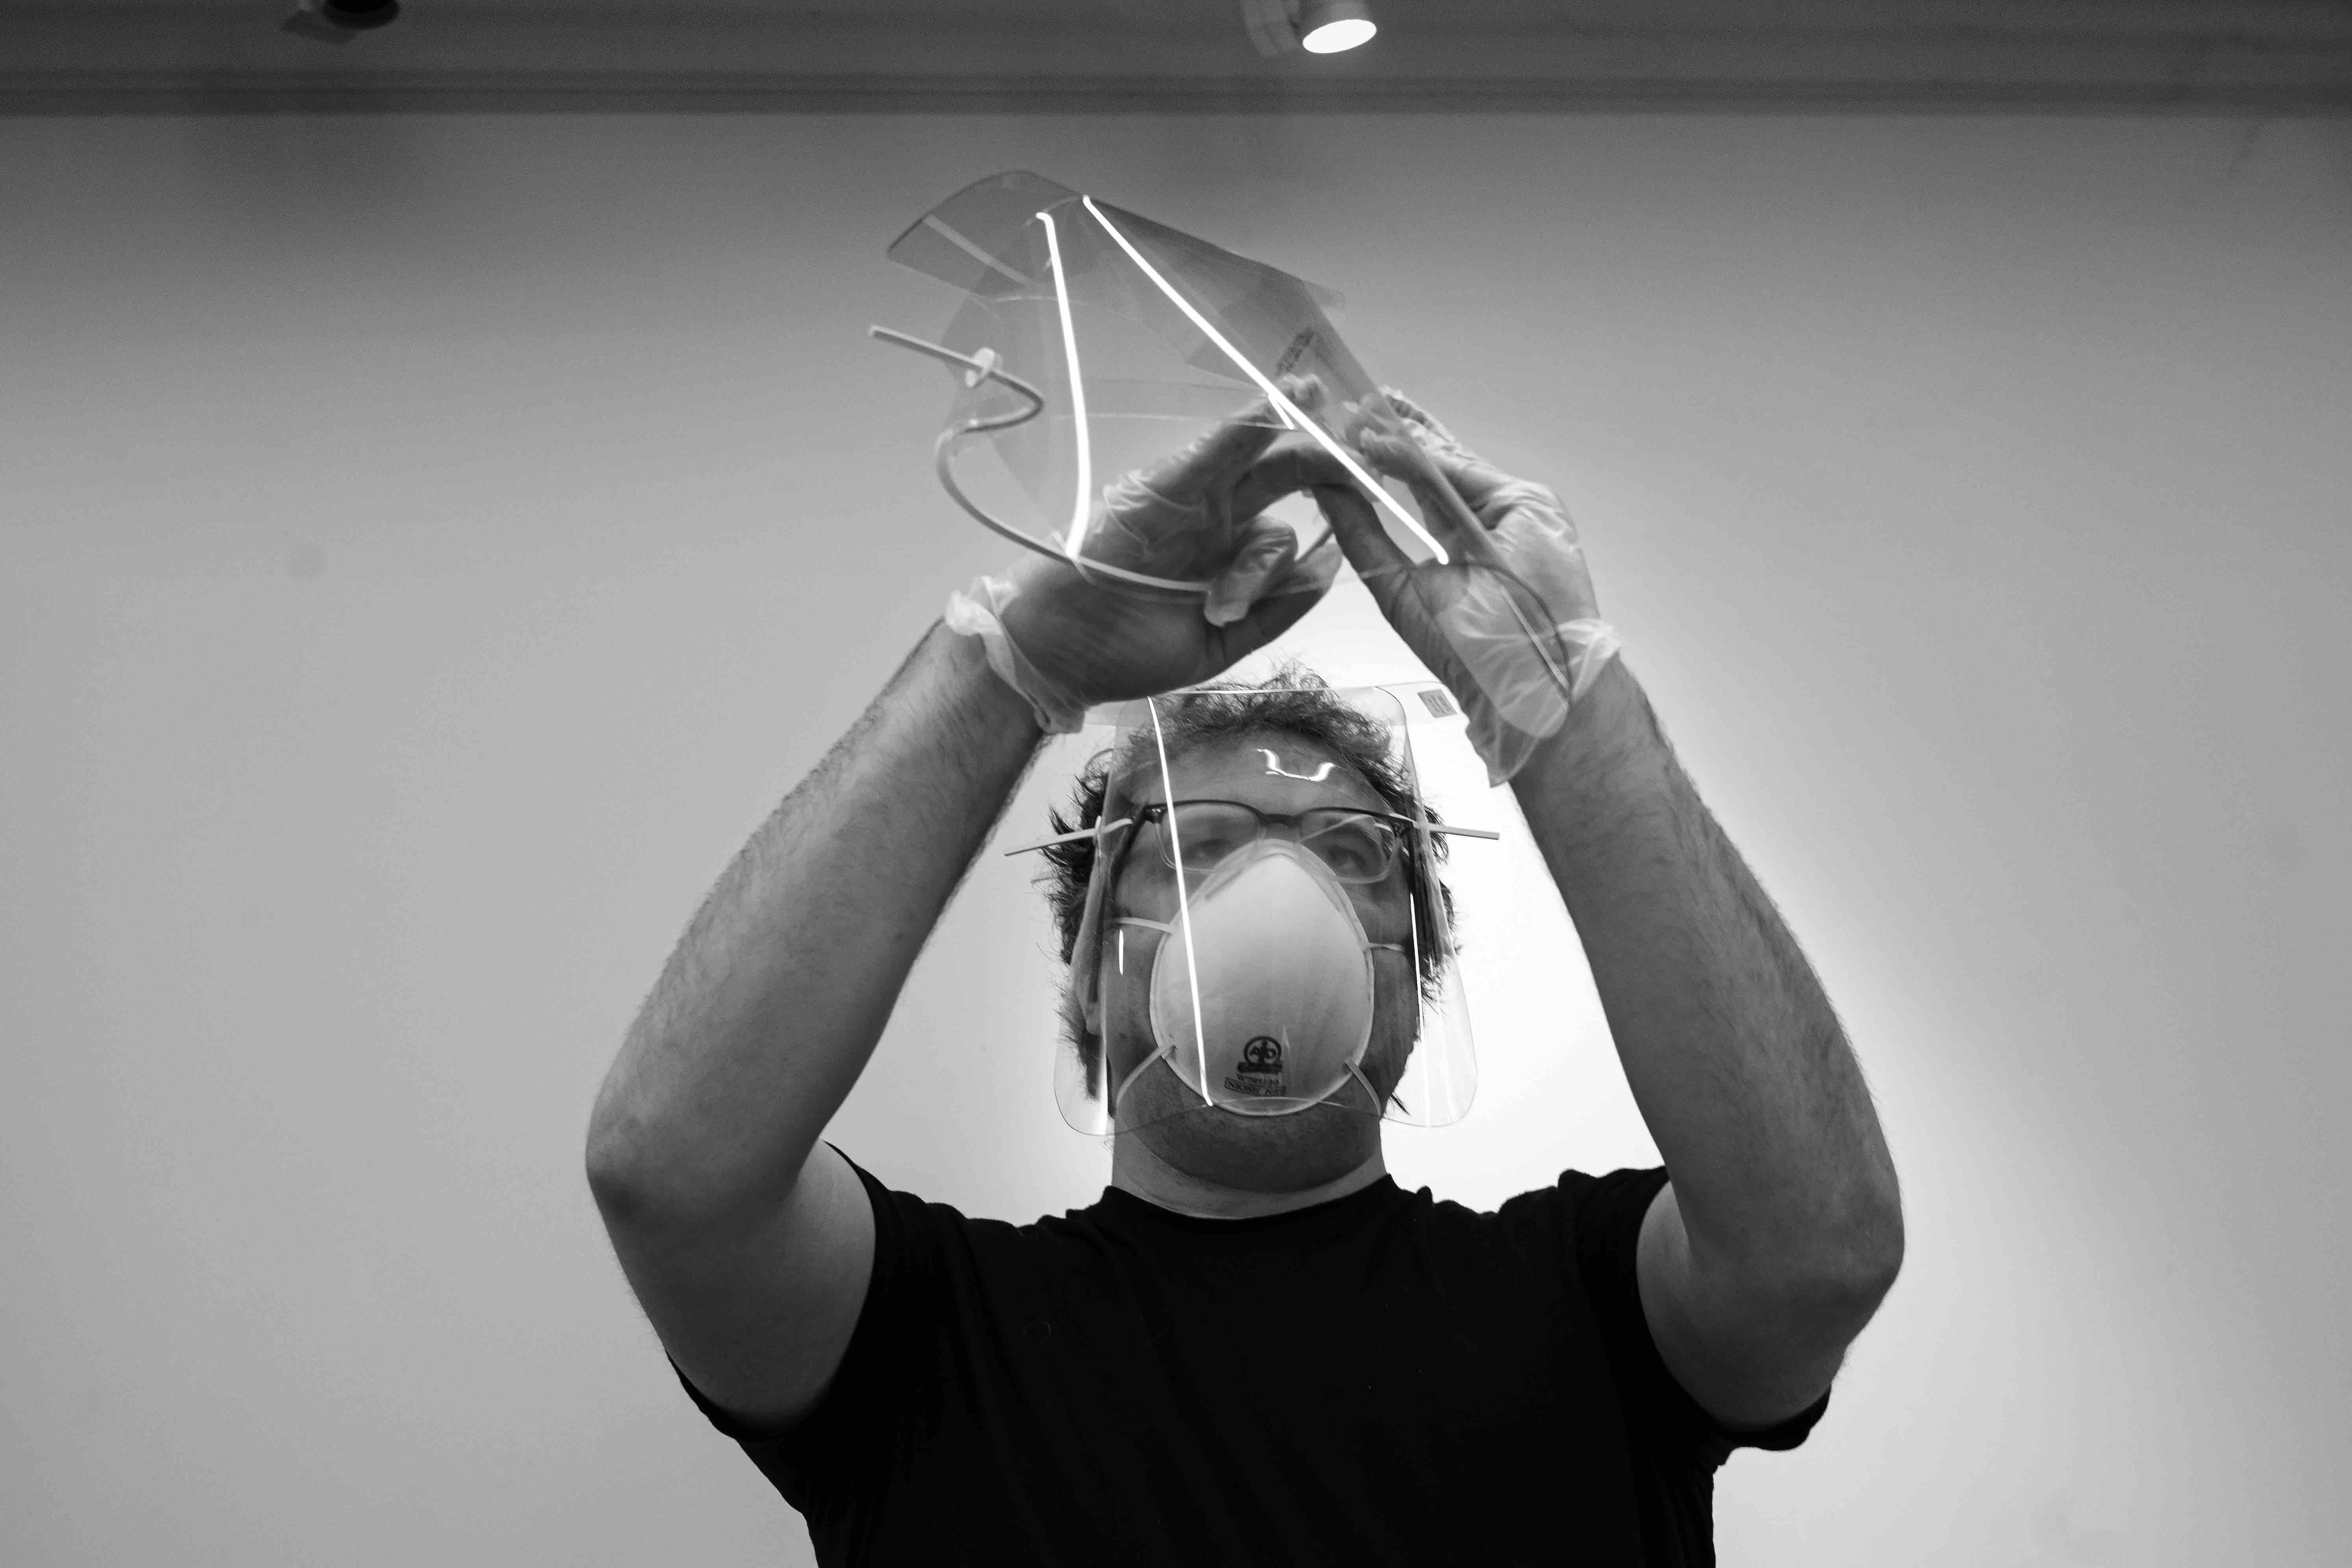 Mark Loeser assembling masks